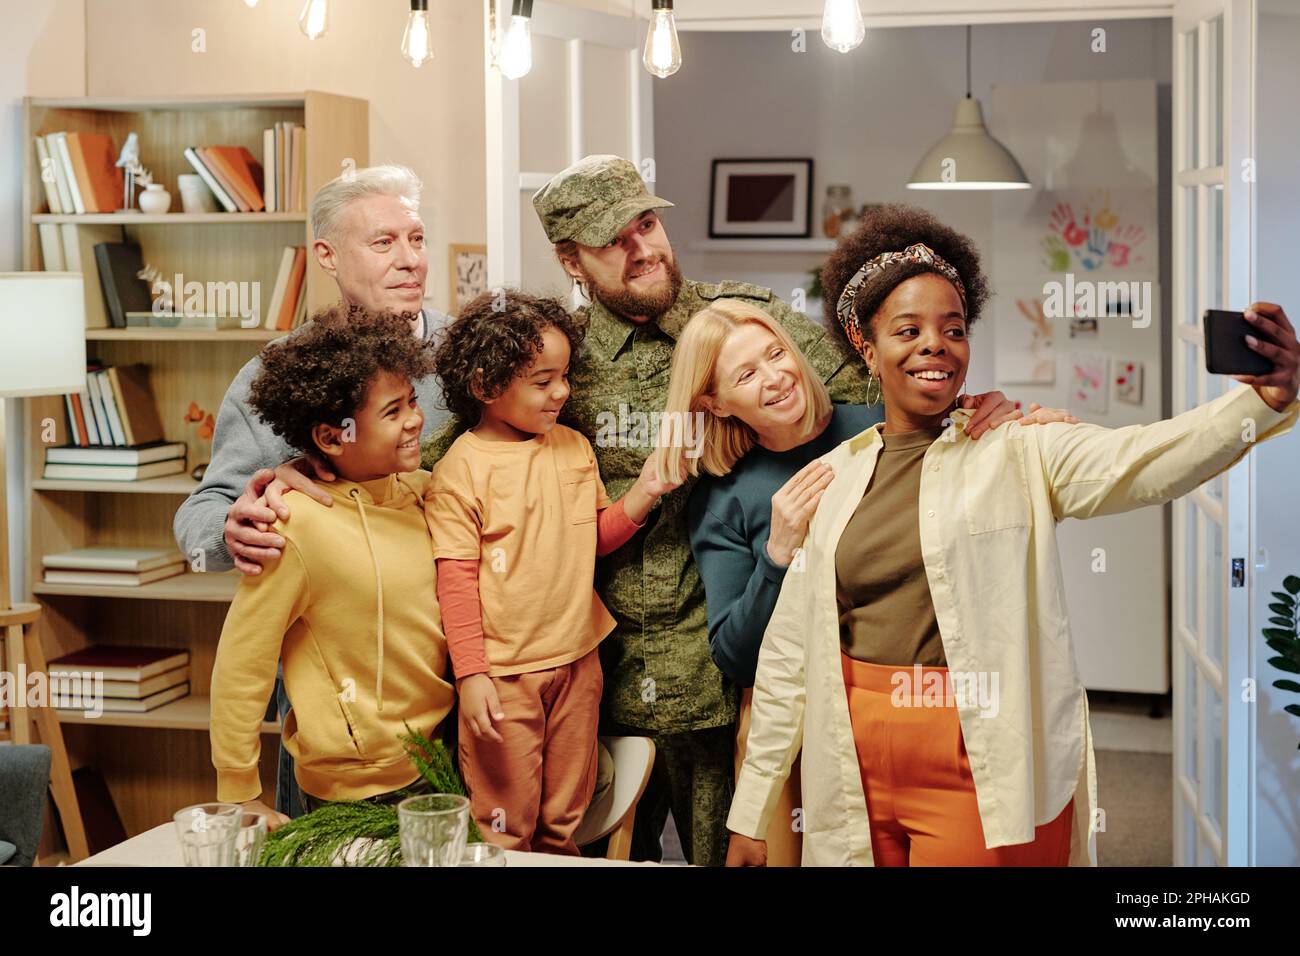 Bonne famille interculturelle de six personnes prenant selfie devant l'appareil photo tout en se tenant dans le salon contre des étagères avec des livres et une porte ouverte Banque D'Images